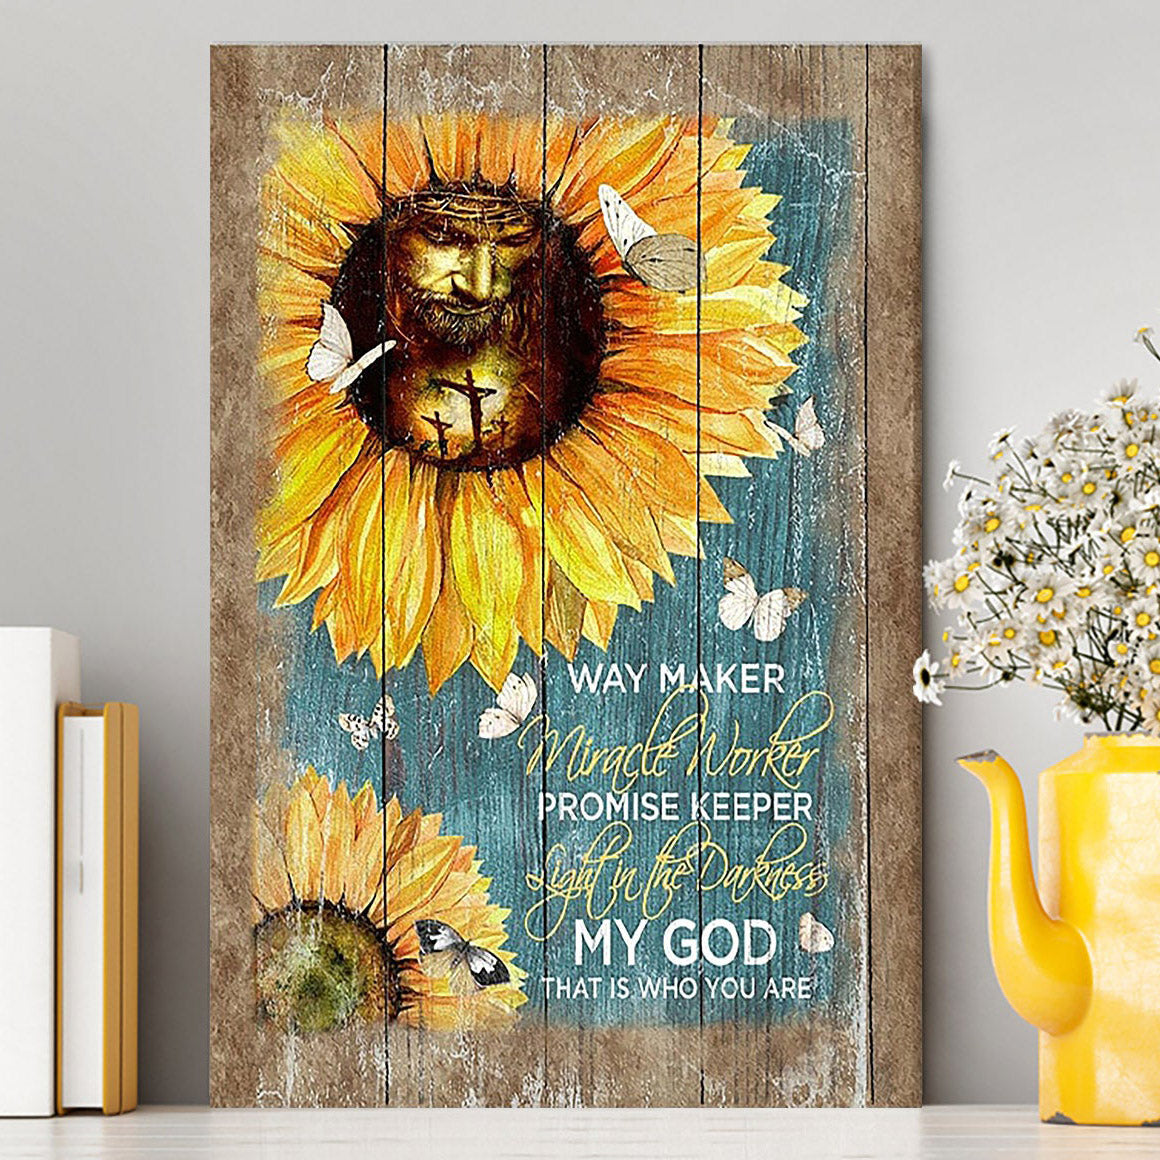 Sunflower Butterfly Way Maker Promise Keeper My Savior Canvas Art - Christian Art - Bible Verse Wall Art - Religious Home Decor